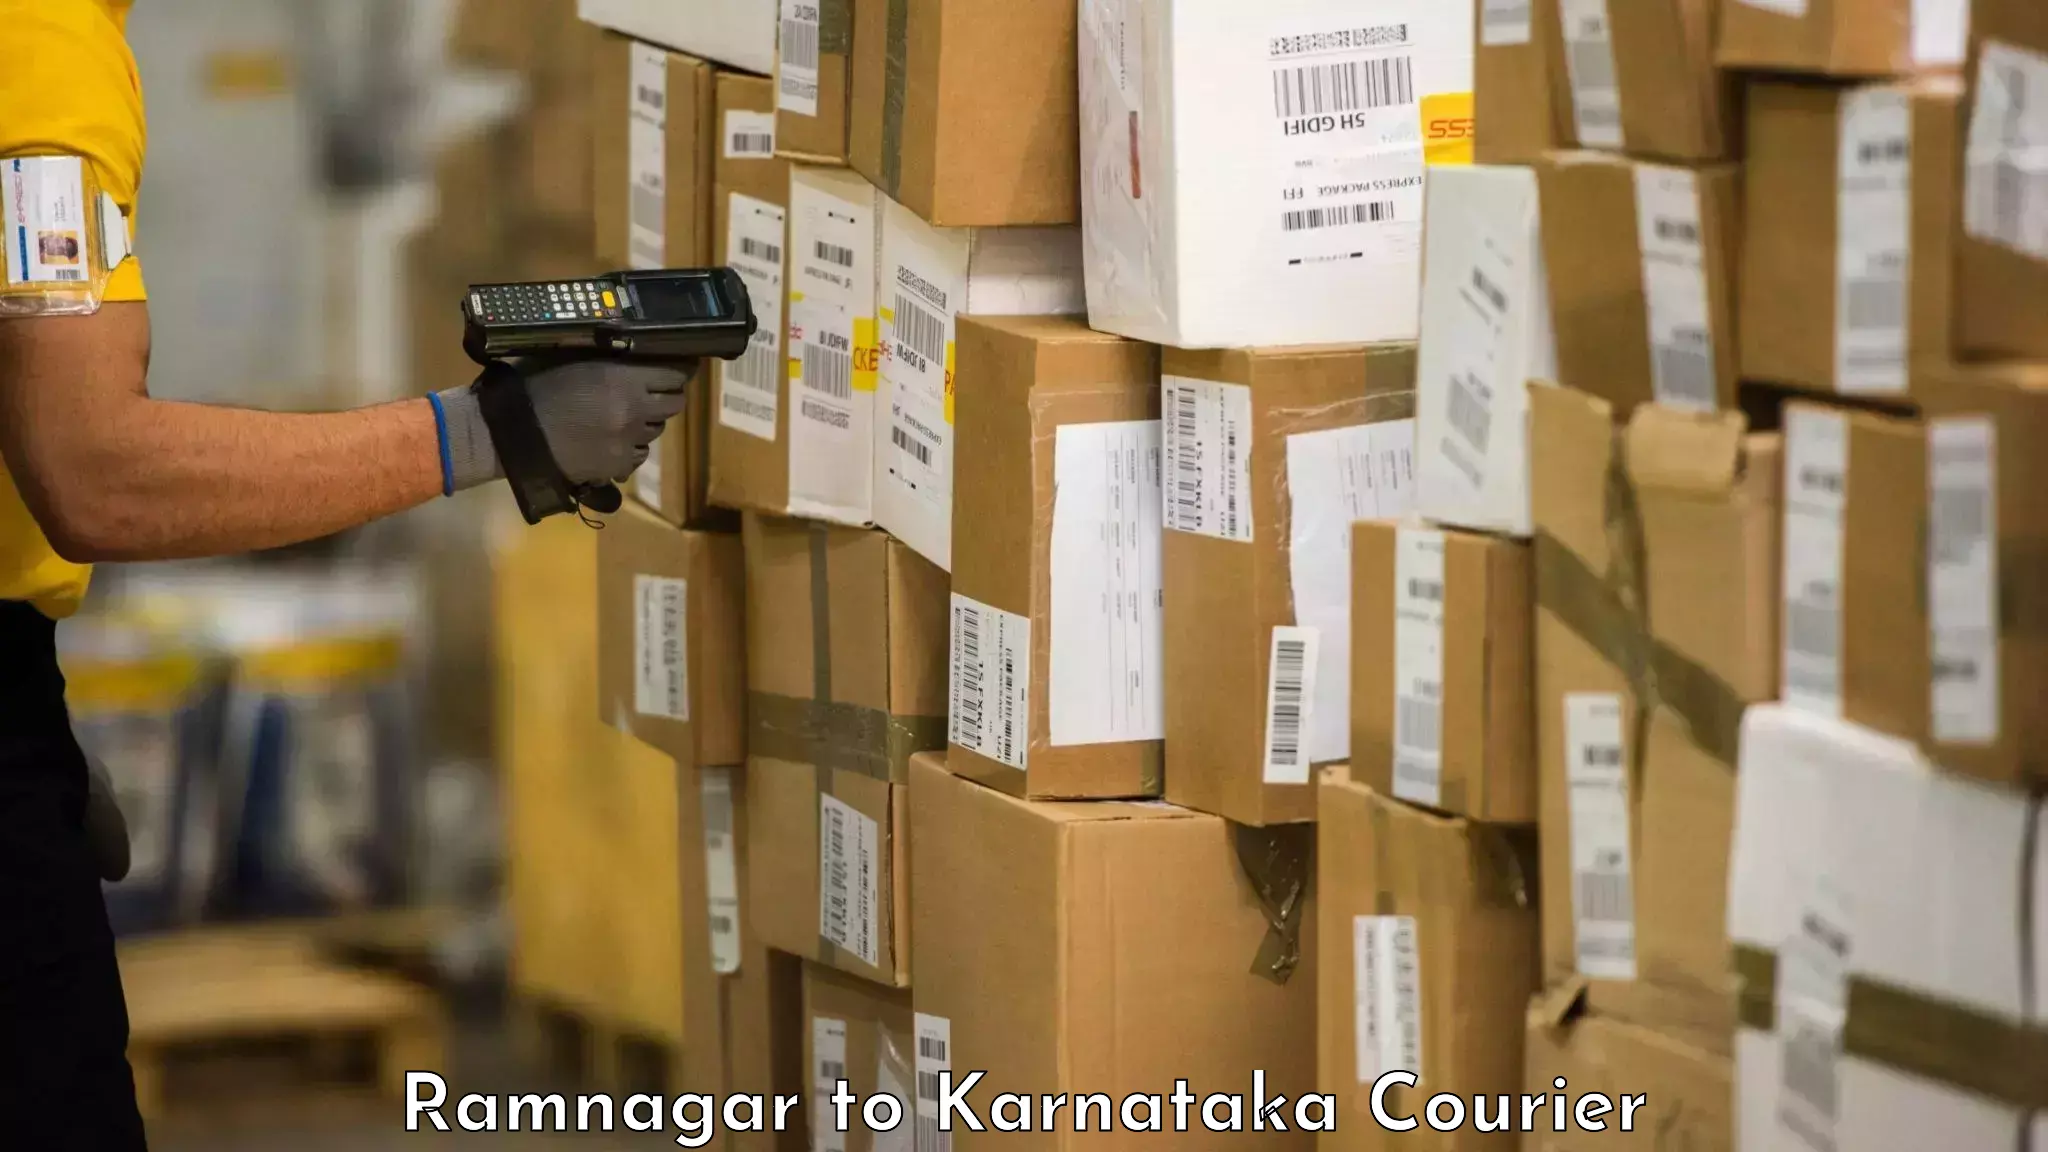 Baggage shipping rates calculator Ramnagar to Karnataka